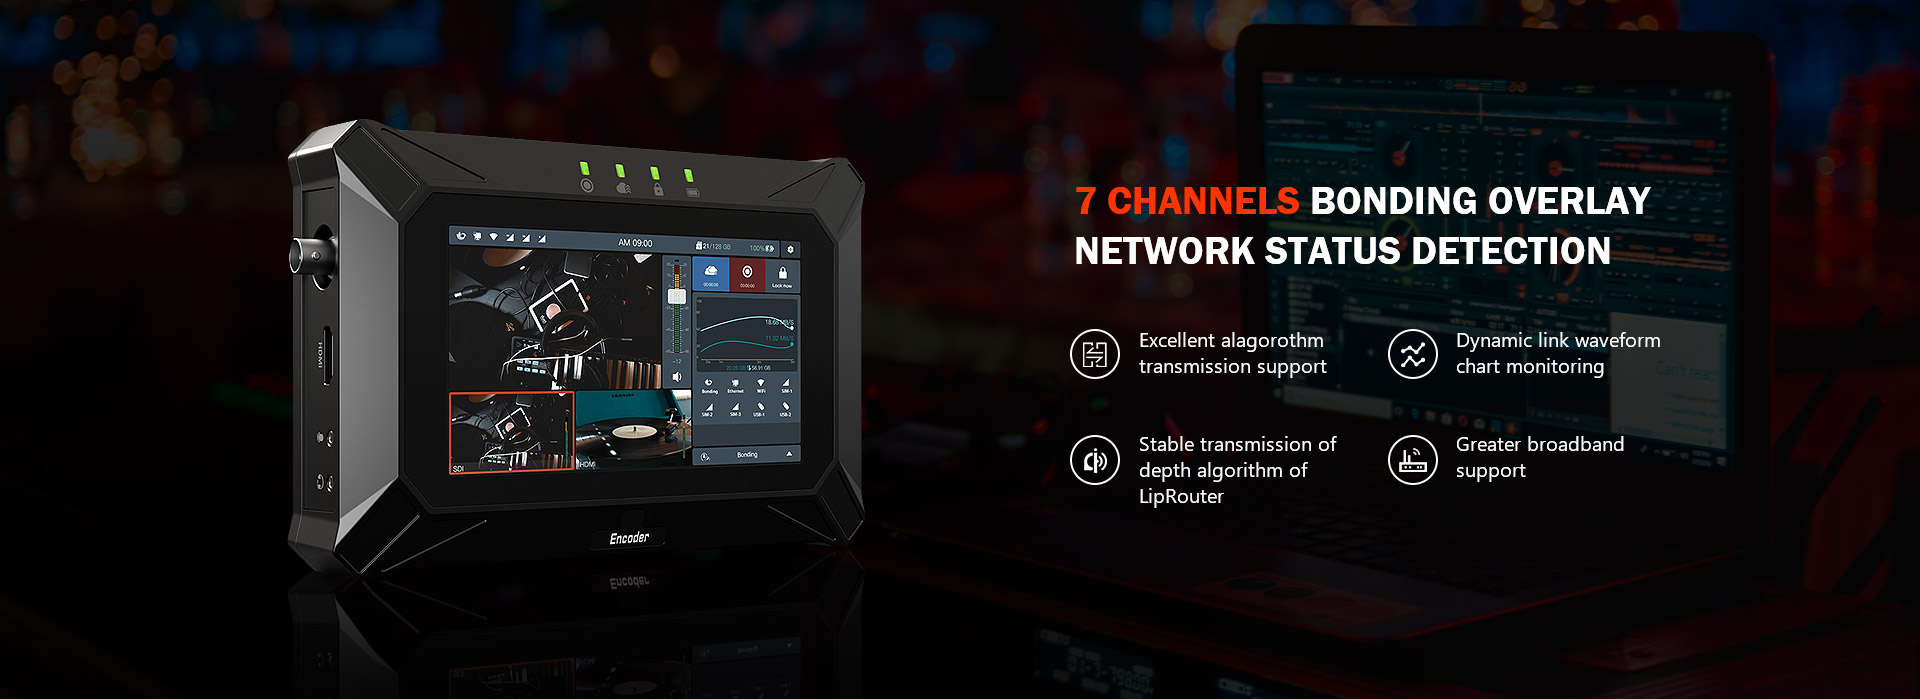 7 channels bonding overlay network status detection